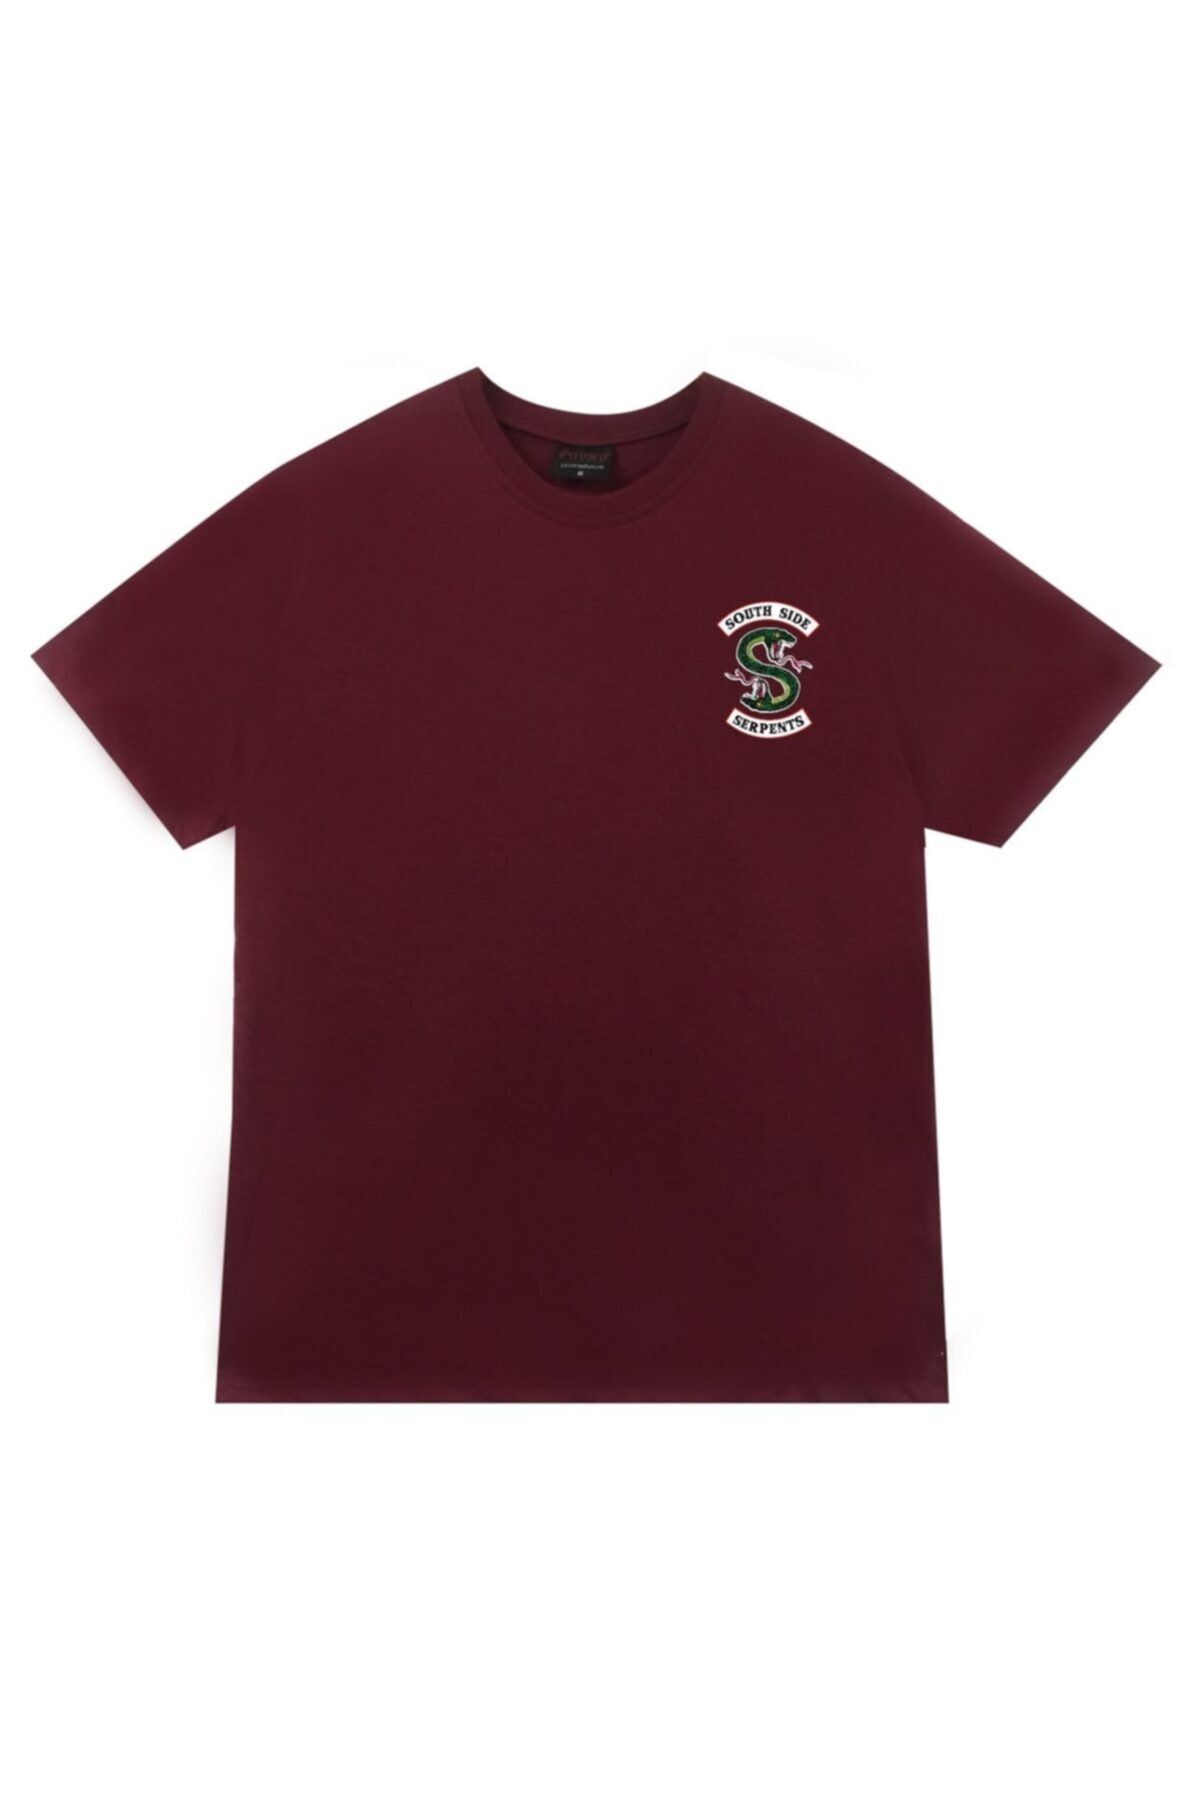 fame-stoned Unisex Kırmızı Riverdale Southside Serpents Baskılı T-shirt